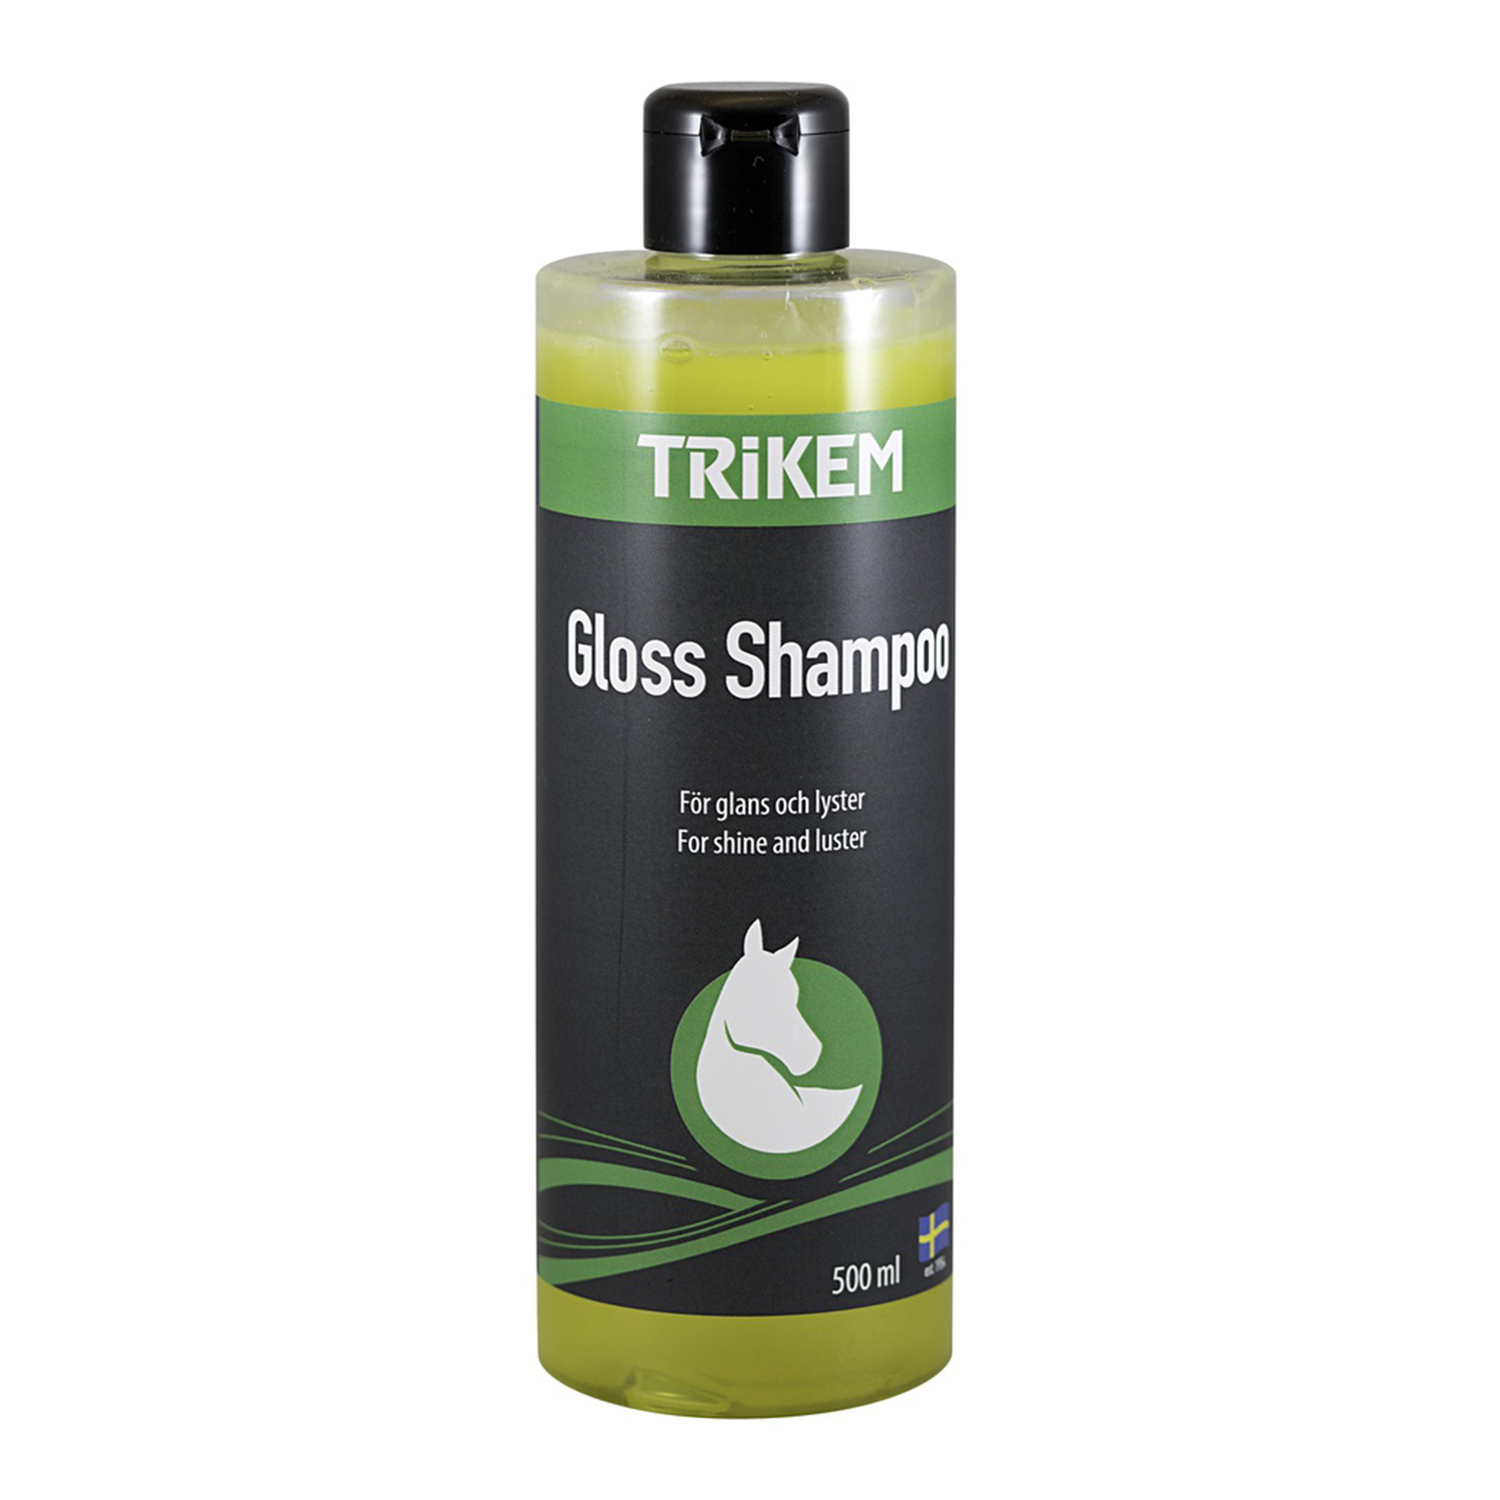 Trikem Gloss Shampoo 500ml